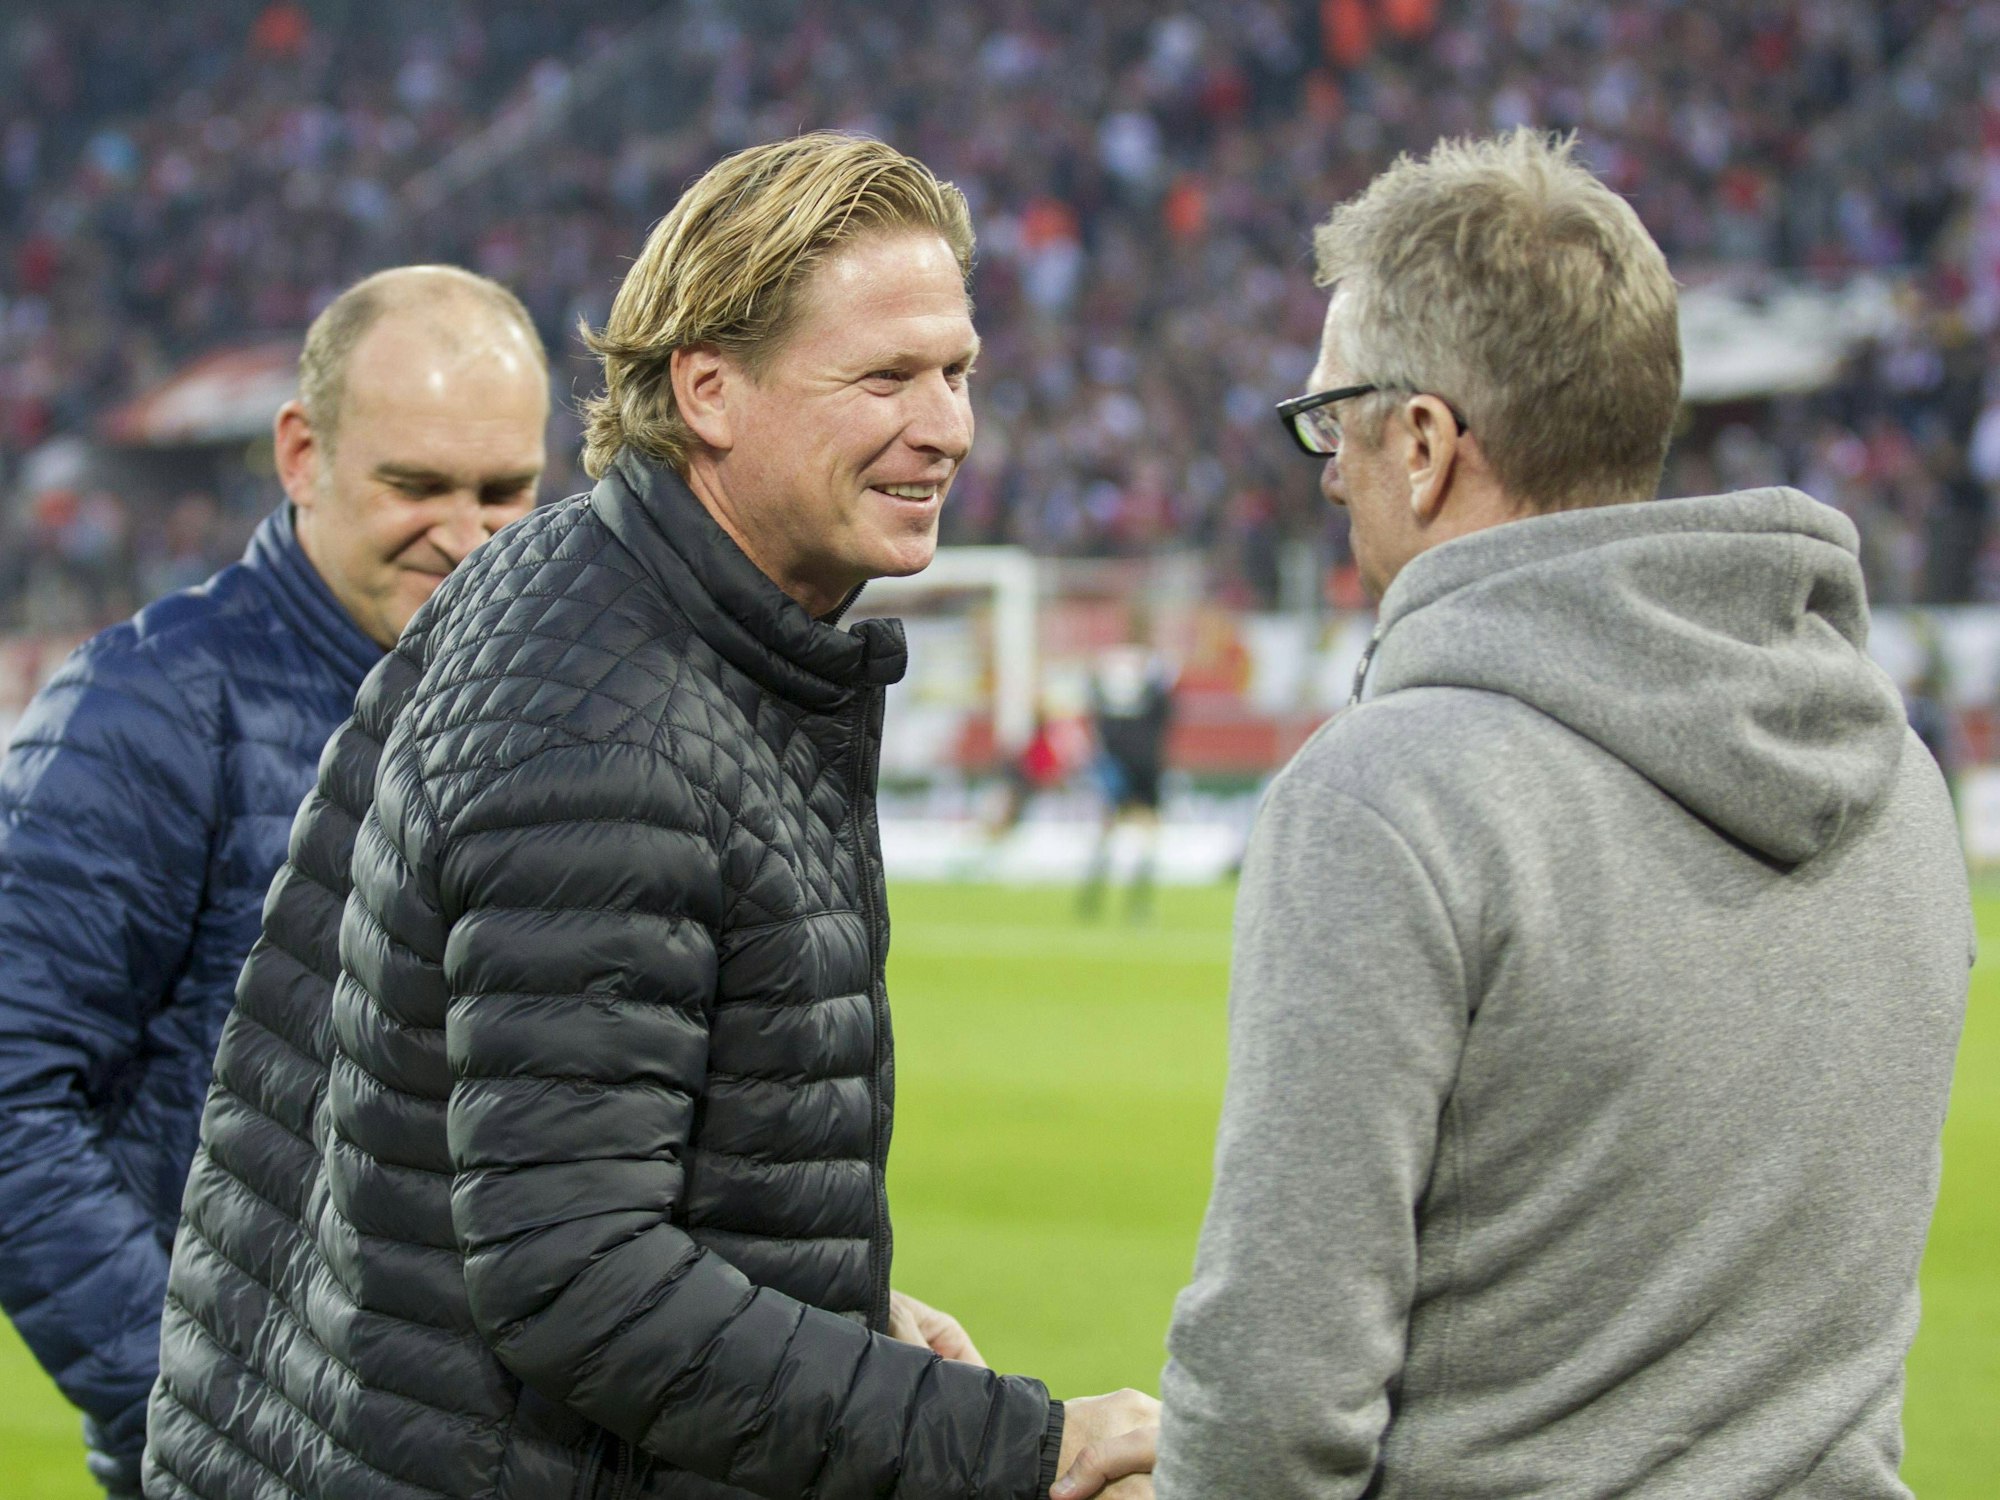 Markus Gisdol und Peter Stöger begrüßen sich beim Bundesliga-Spiel 1. FC Köln gegen Hamburger SV.